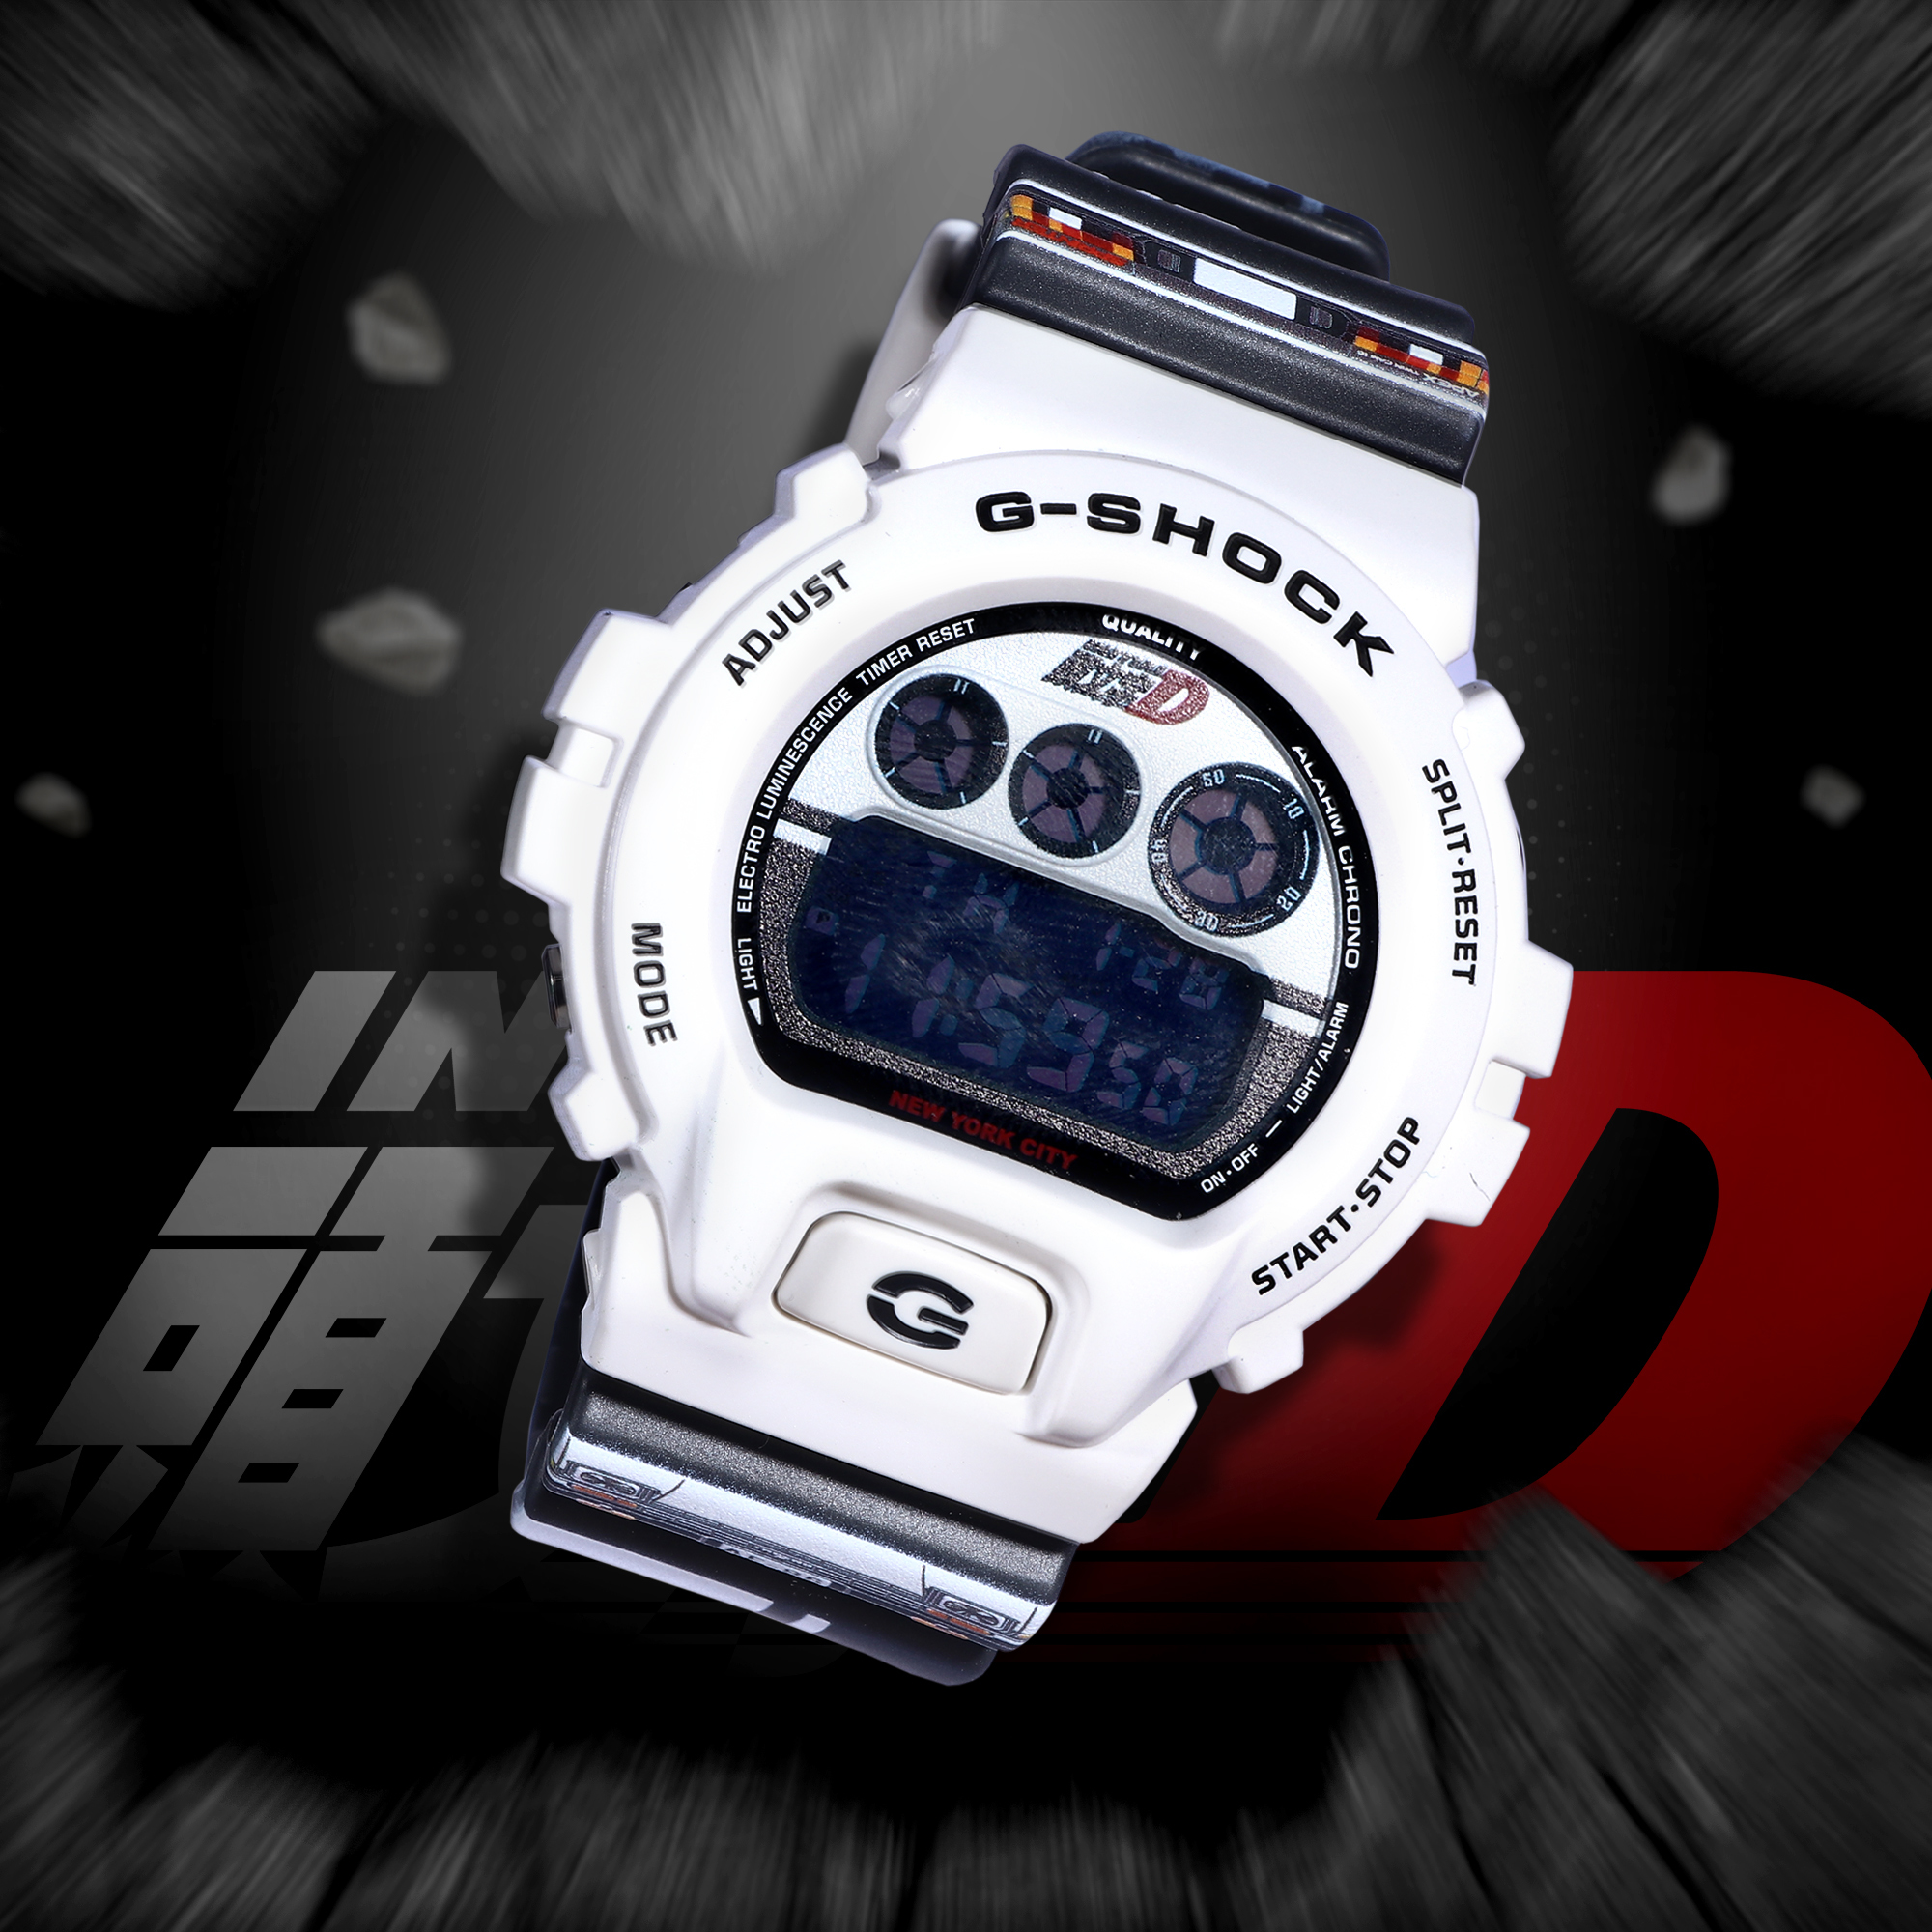 16,240円dw-6900 Initial D G-Shock 文字頭D 海外